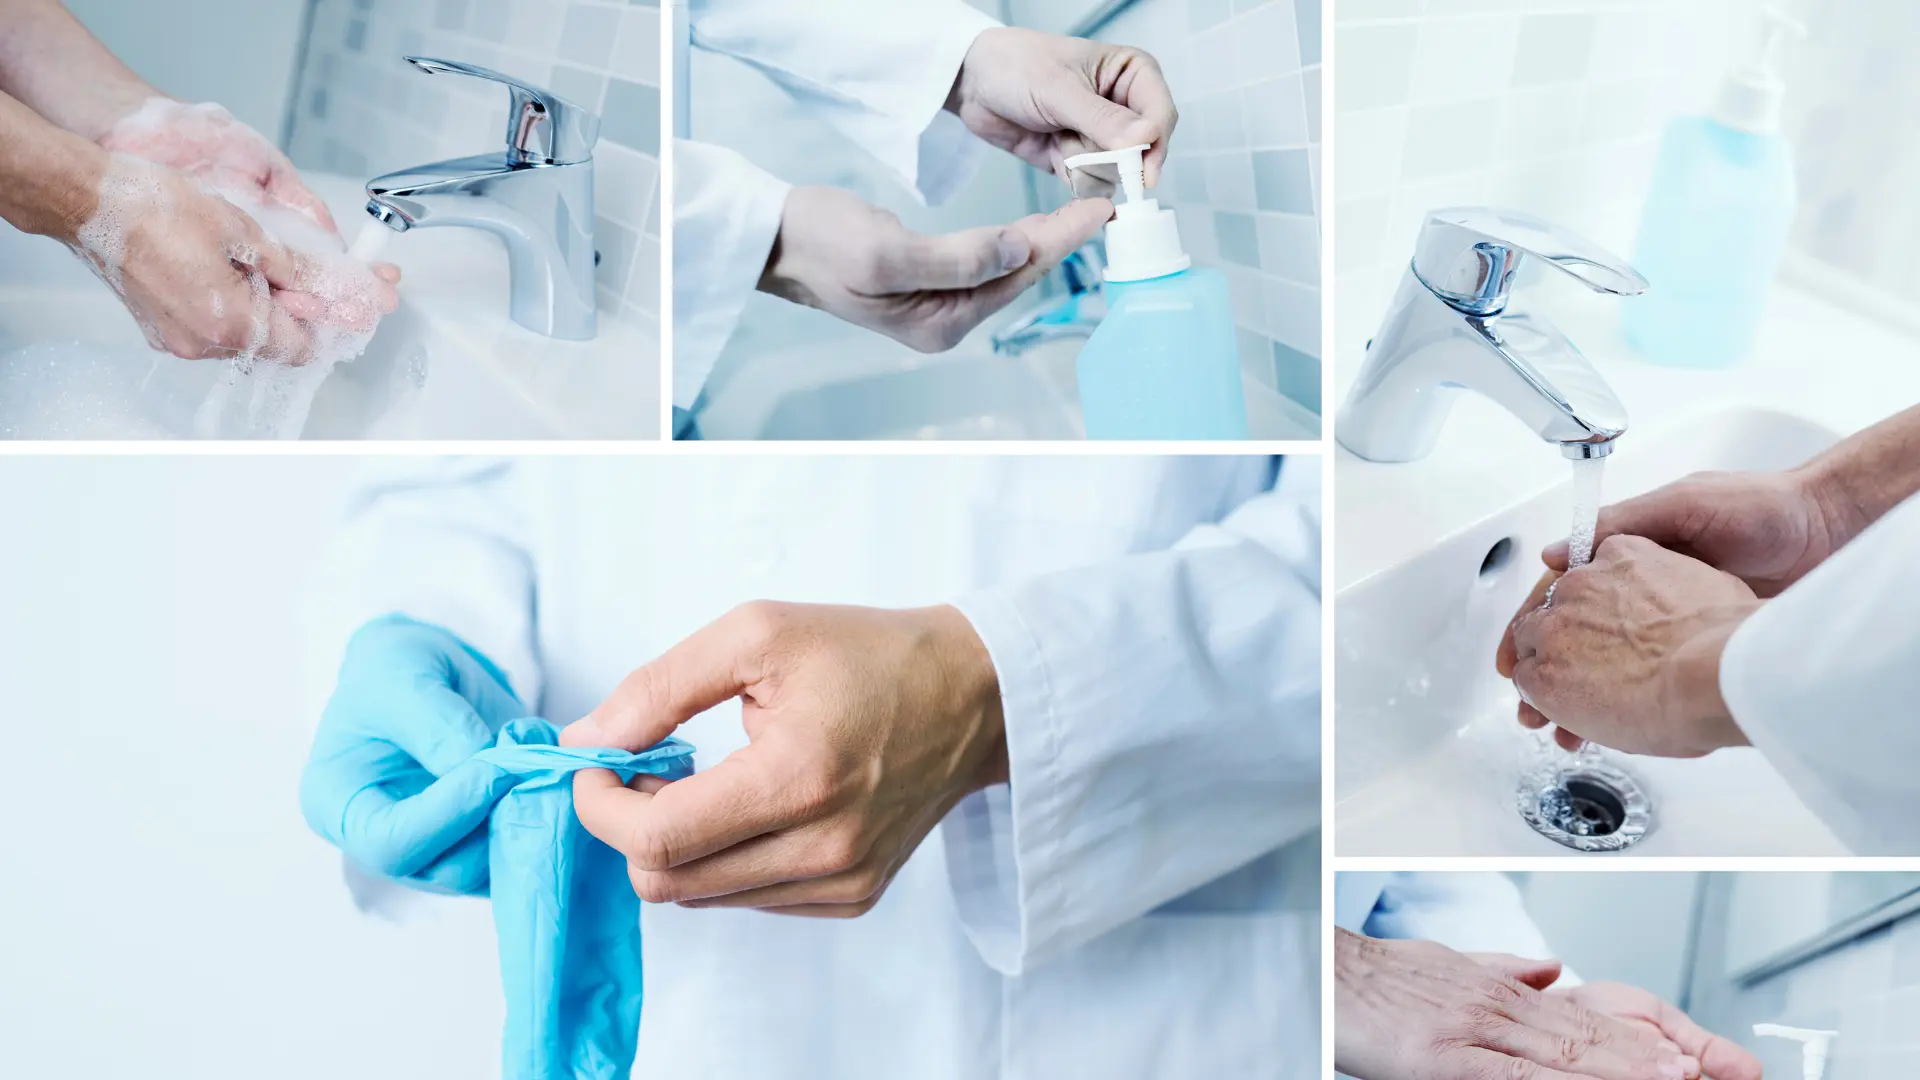 Los profesionales sanitarios tenemos que realizar lavado frecuente de manos, aplicar geles hidralcoholicos y desinfectantes y llevar guantes, lo que nos hace un gremio predispuesto a tener dermatitis de las manos